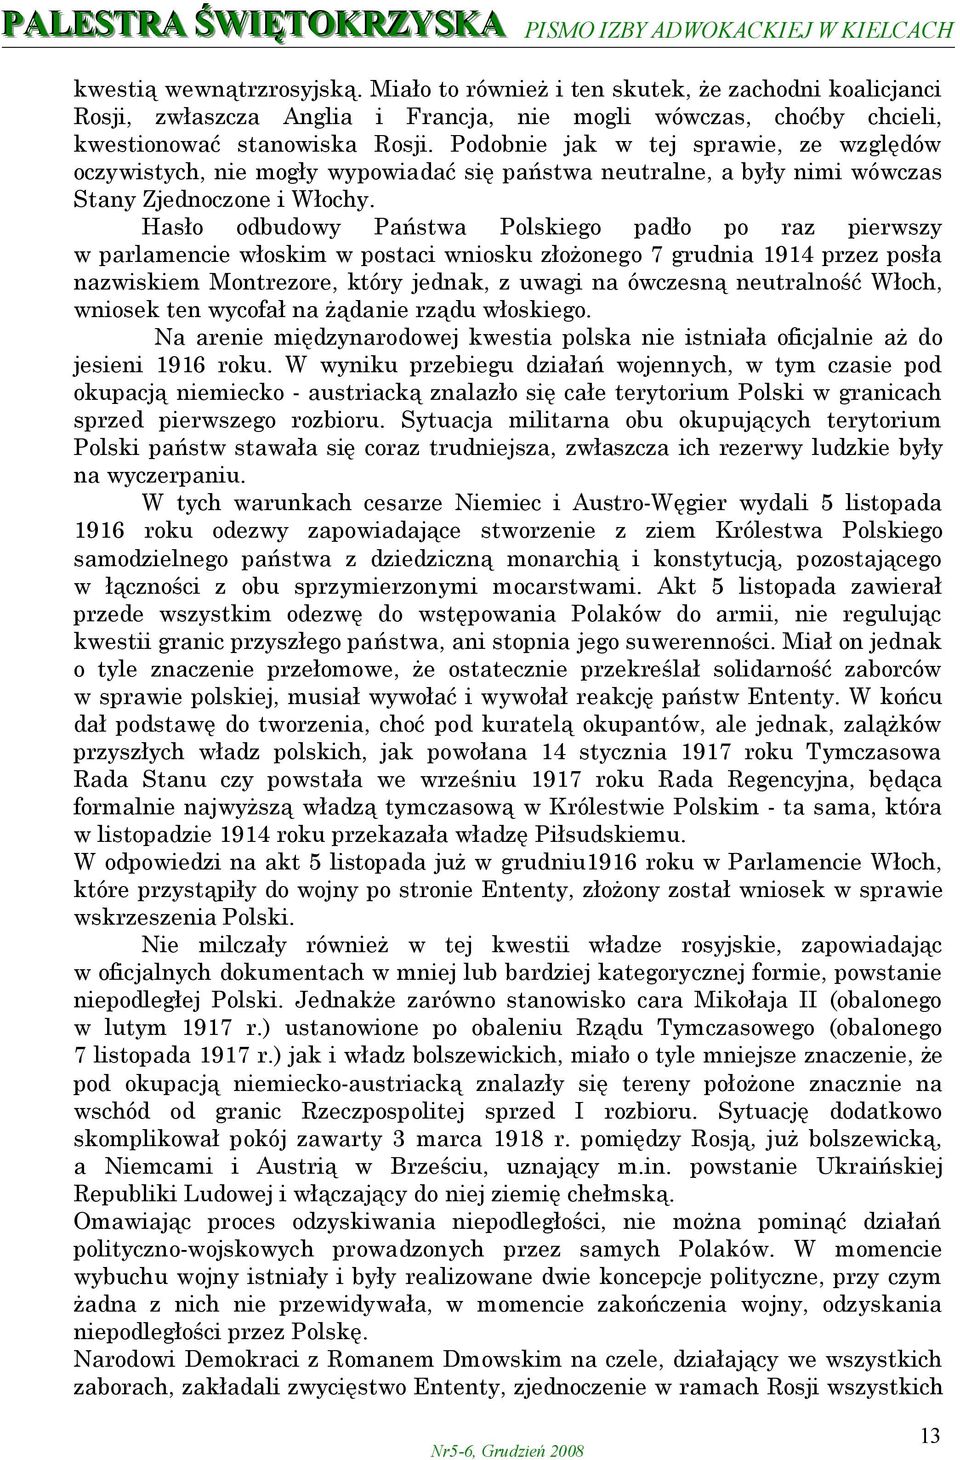 Hasło odbudowy Państwa Polskiego padło po raz pierwszy w parlamencie włoskim w postaci wniosku złożonego 7 grudnia 1914 przez posła nazwiskiem Montrezore, który jednak, z uwagi na ówczesną